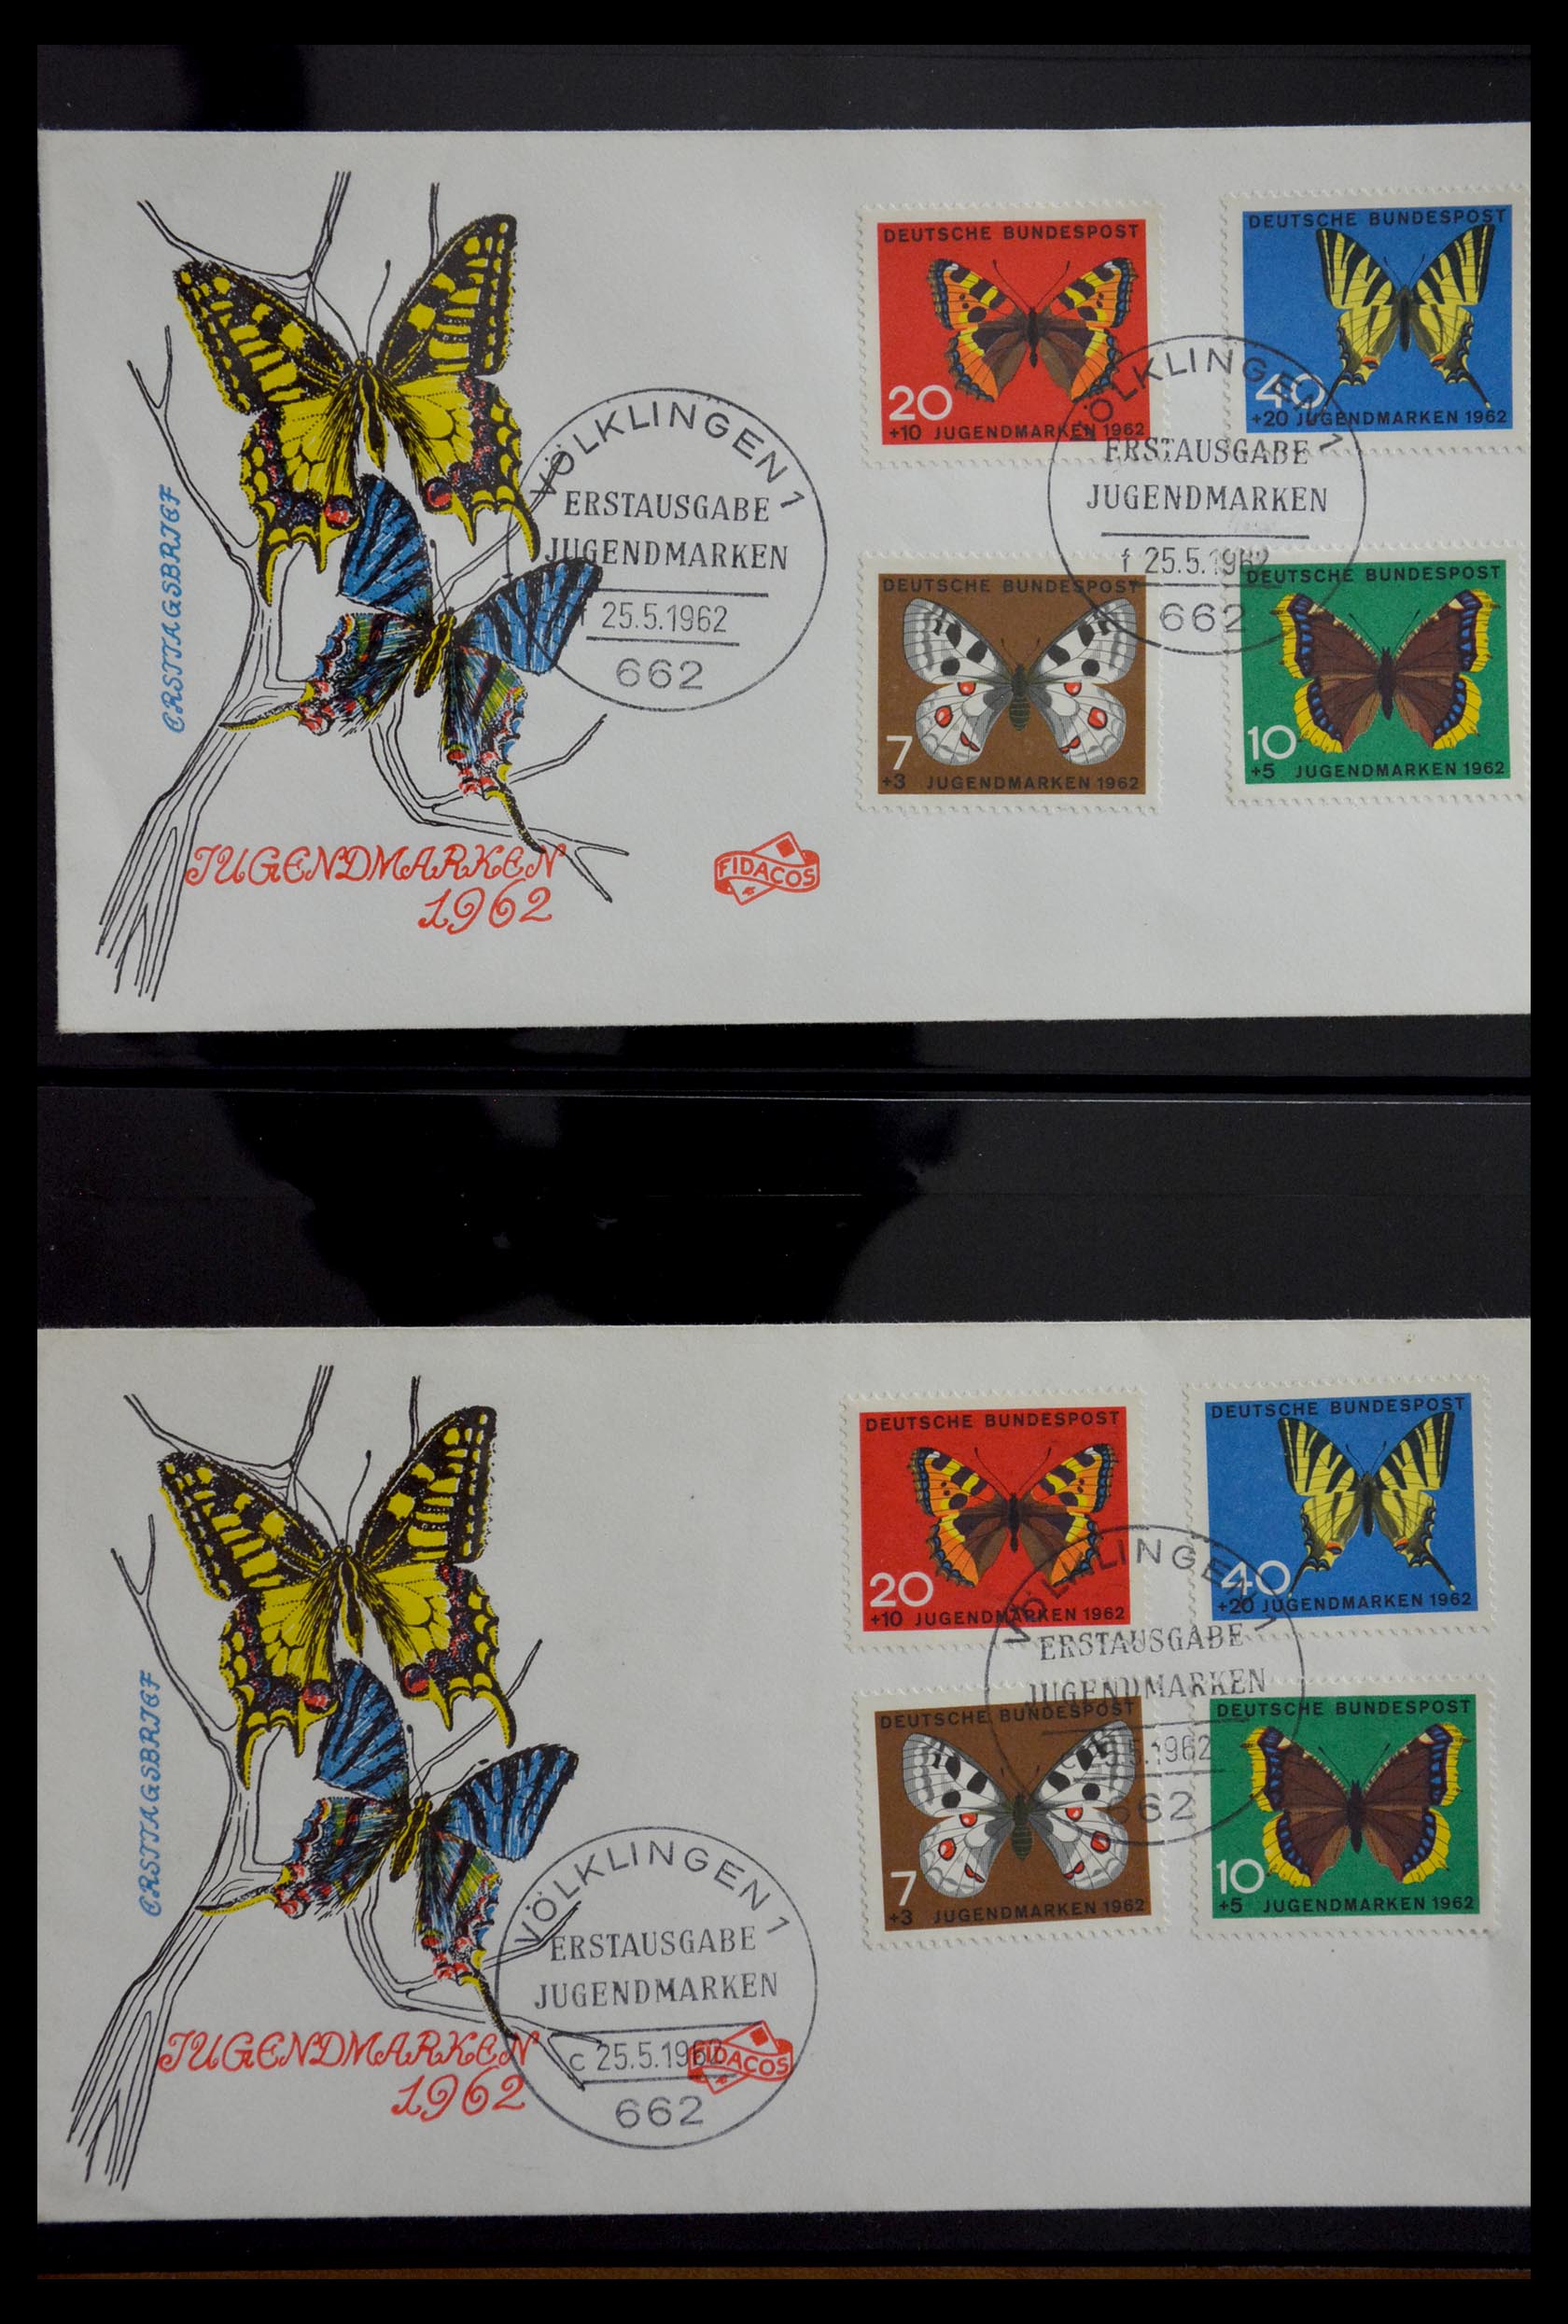 29382 025 - 29382 Duitsland brieven en FDC's 1936-1965.